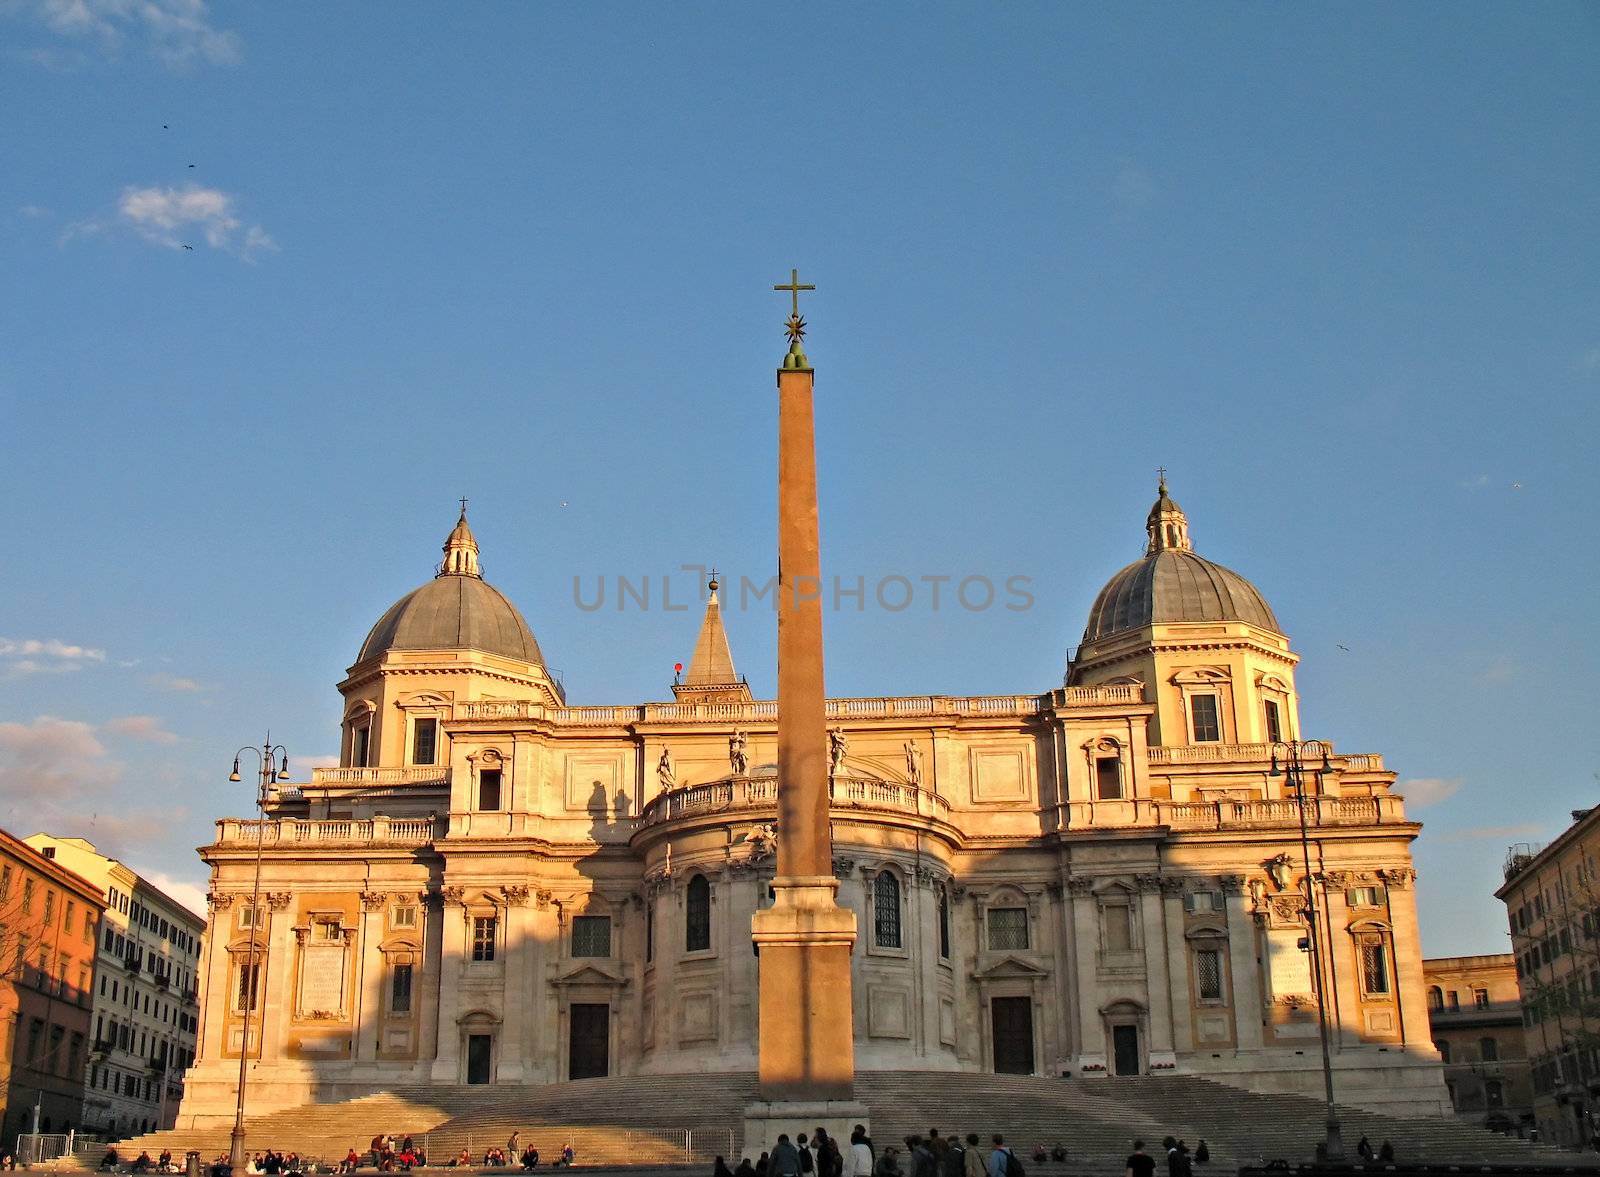 Basilica Santa Maria Maggiore - Rome/Roma
